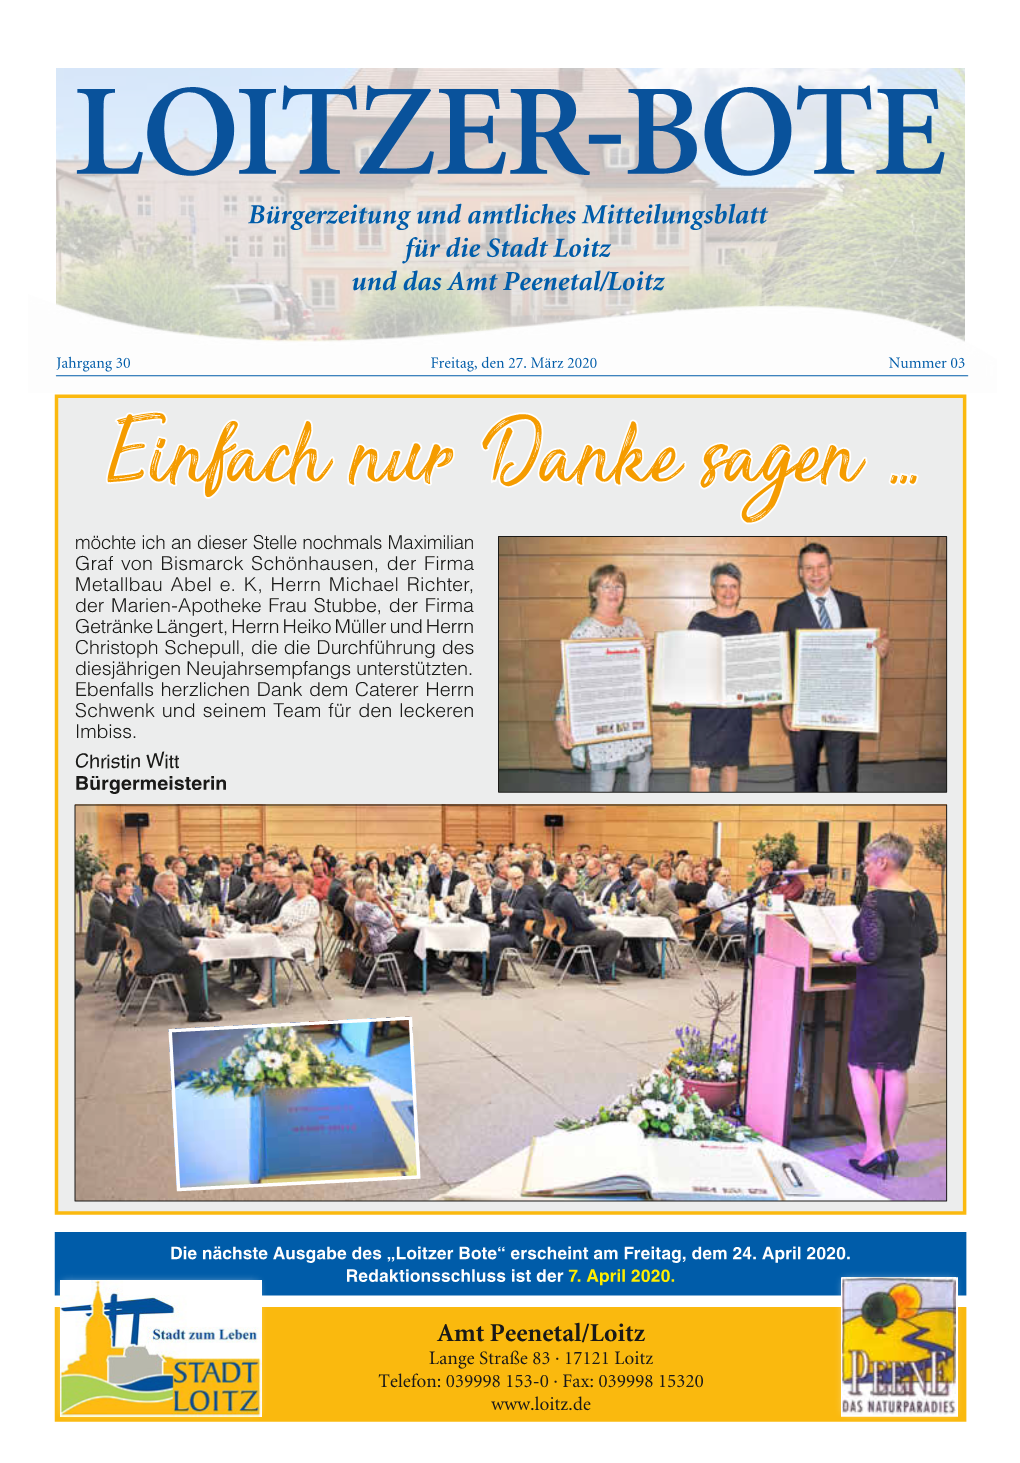 Bürgerzeitung Und Amtliches Mitteilungsblatt Für Die Stadt Loitz Und Das Amt Peenetal/Loitz